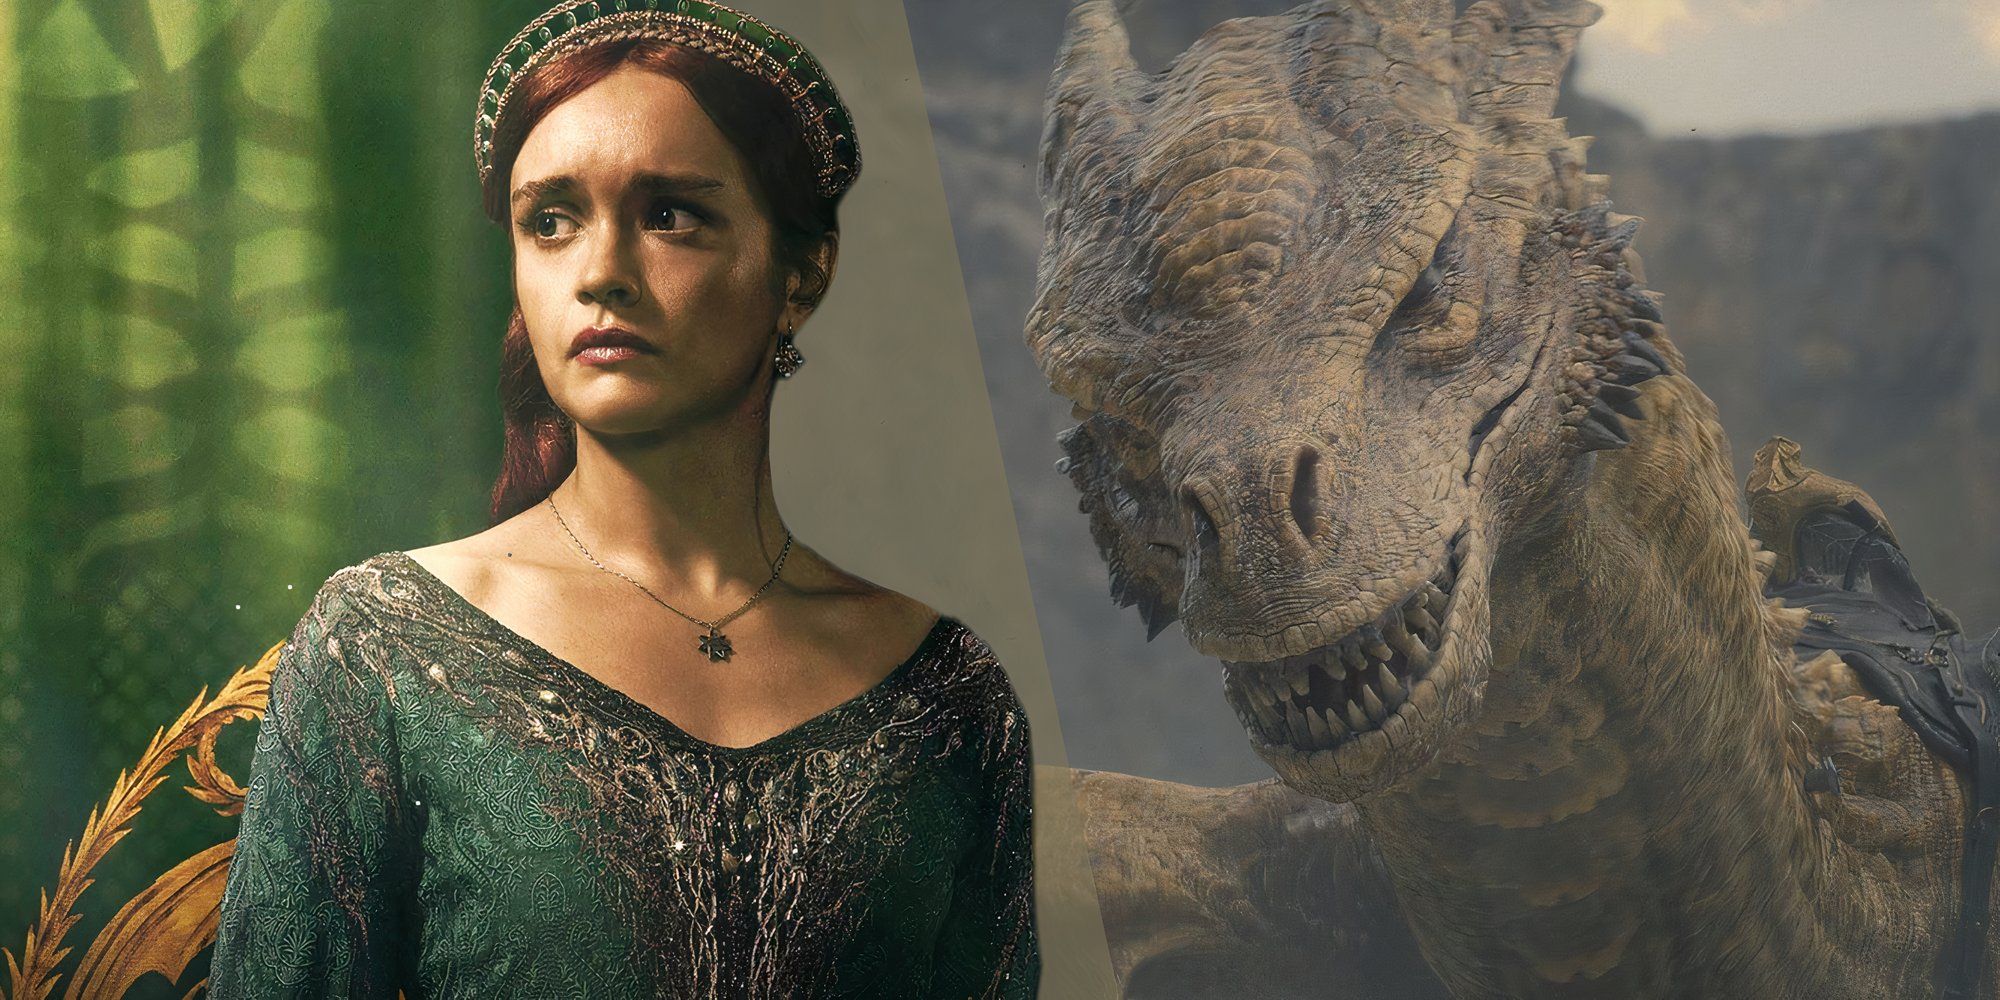 House Of The Dragon ha utilizado exactamente el mismo truco de presagio dos semanas seguidas con dos personajes diferentes